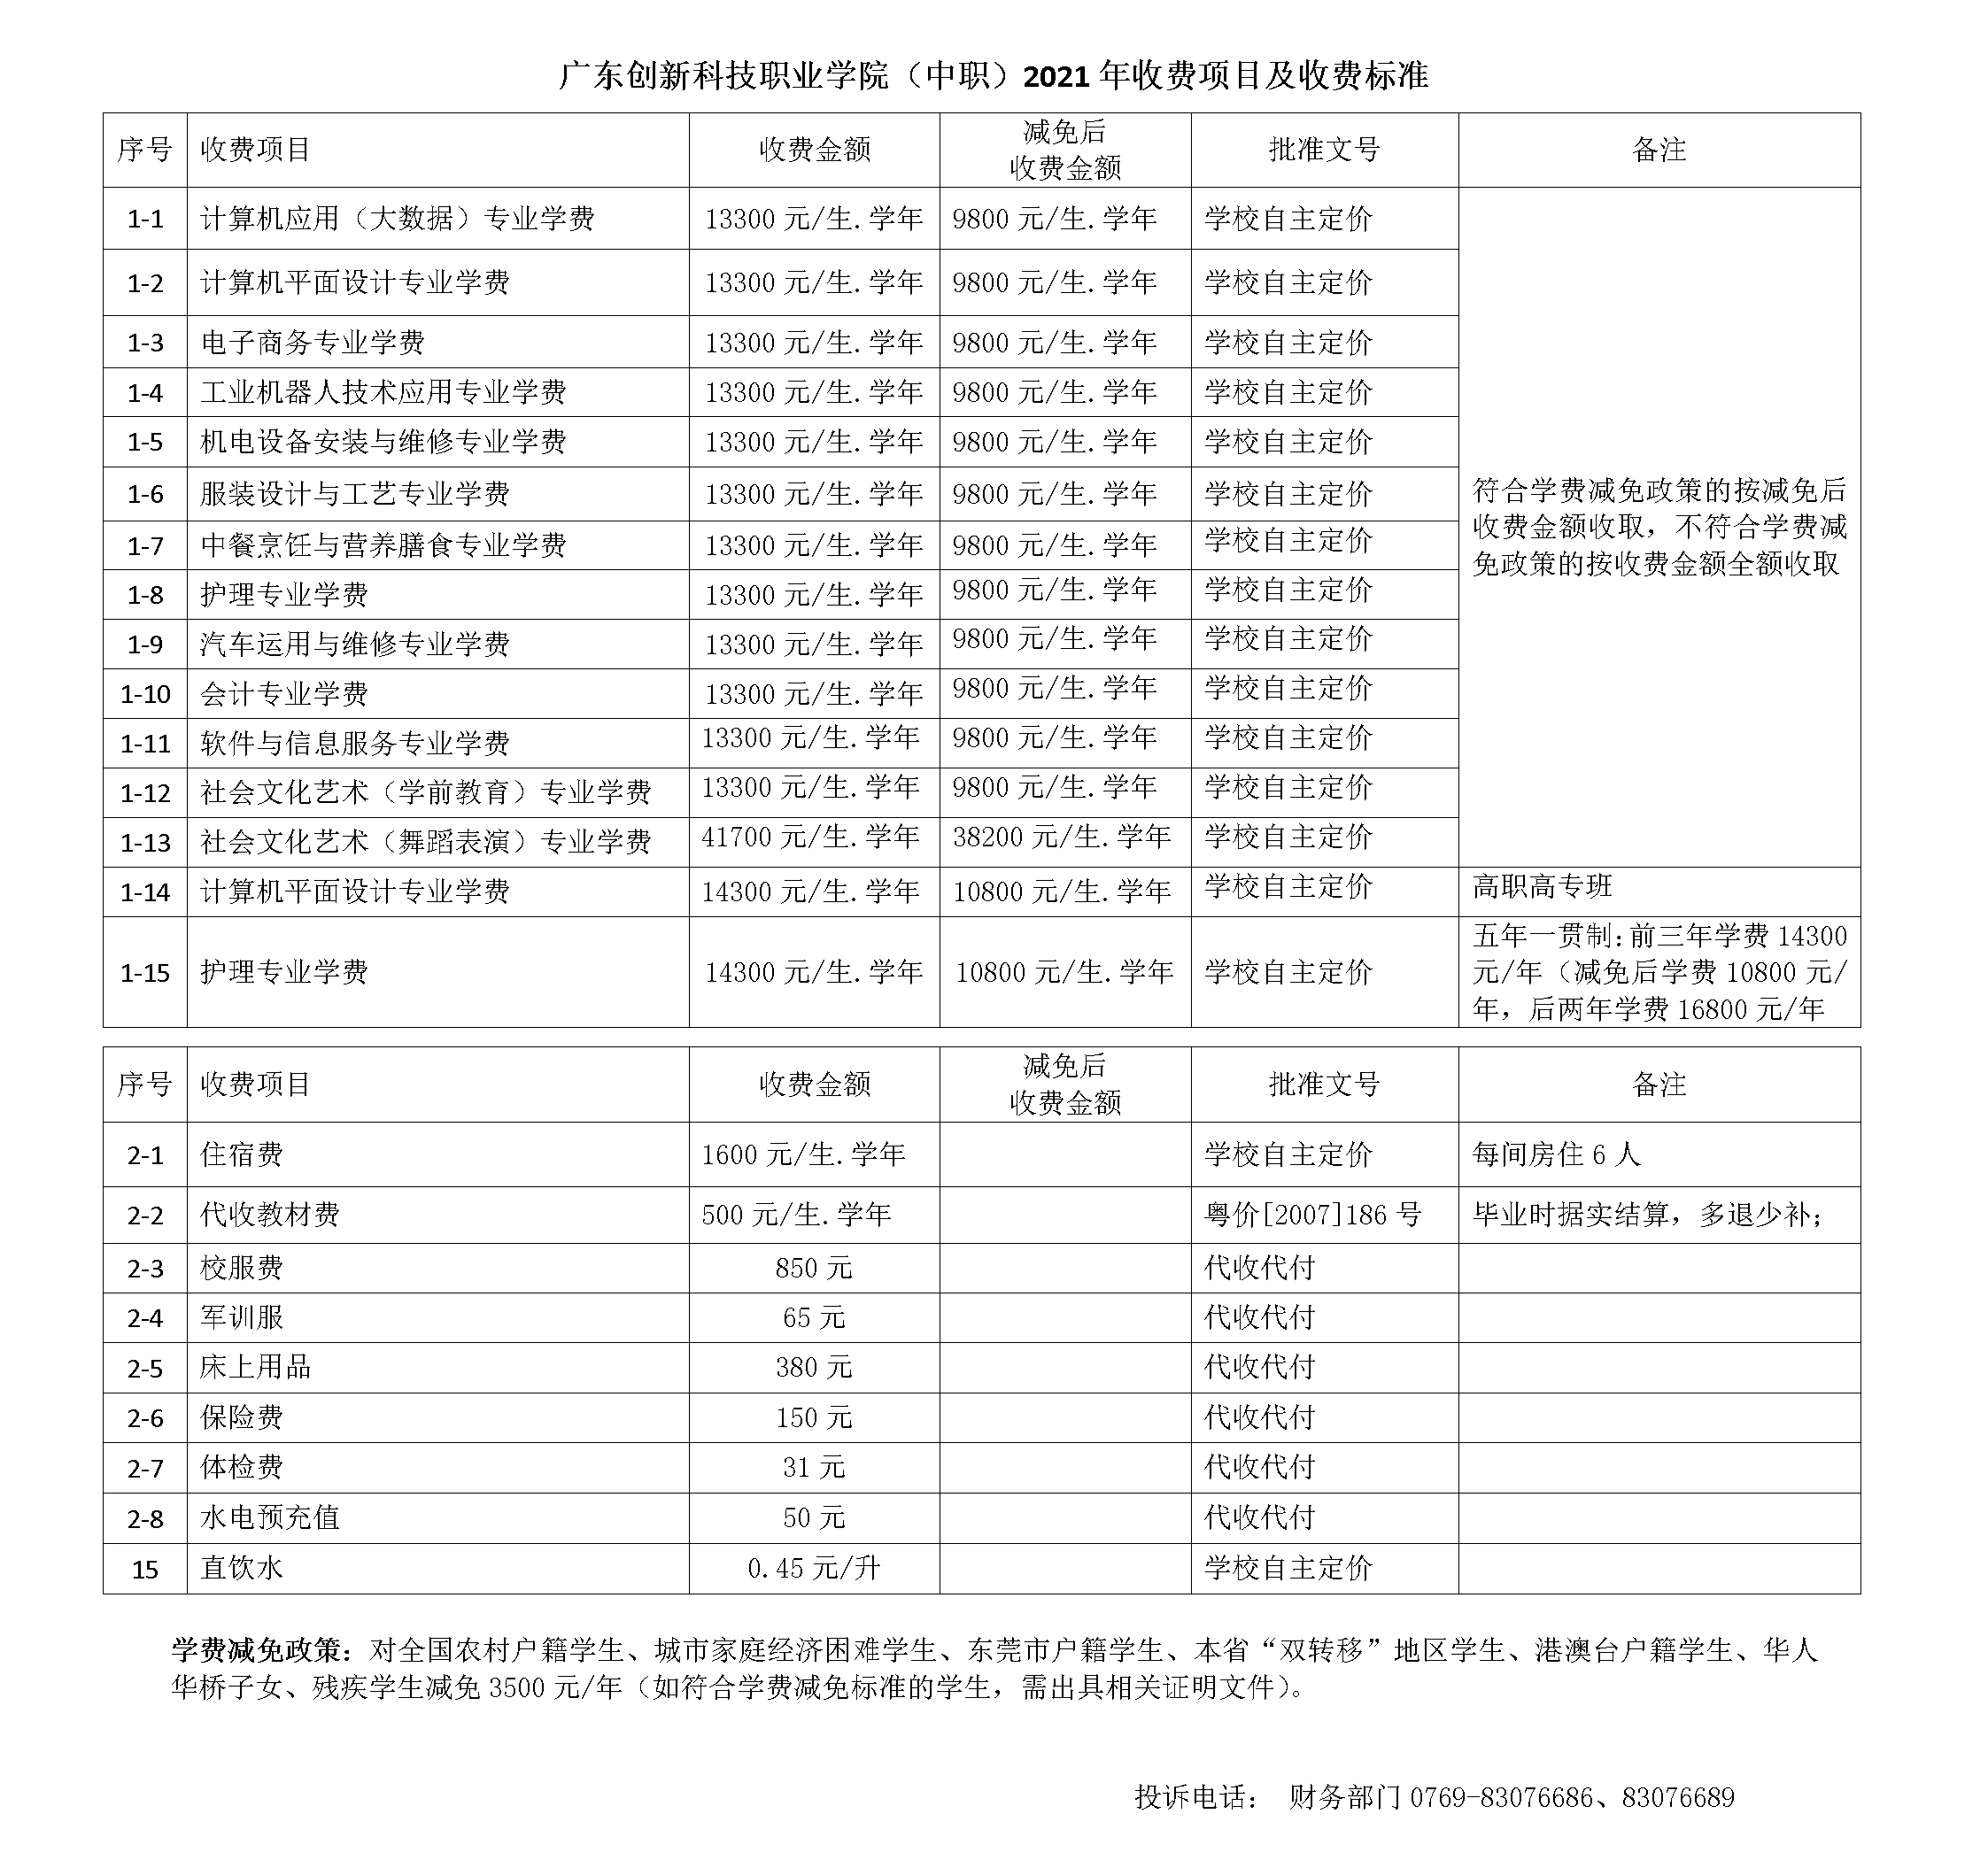 广东创新科技职业学院(中职)2021年收费标准公示20210508.png